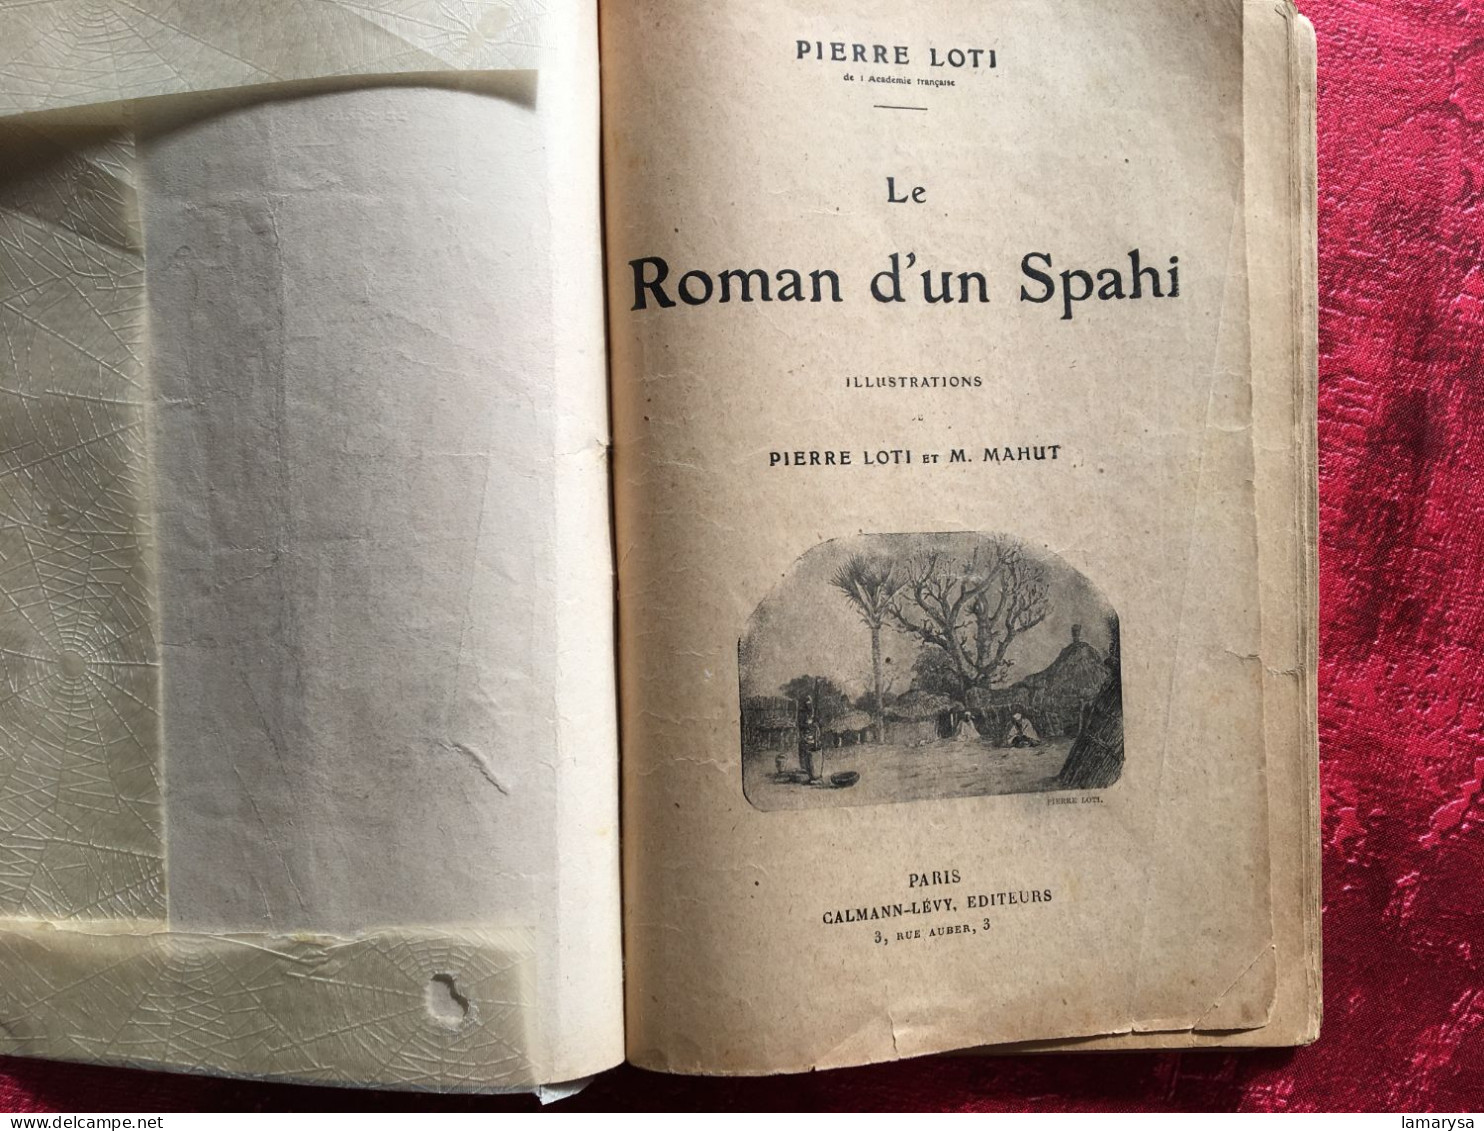 Le Roman D'un Spahi :Pierre Loti Livre Français Romans Aventures-illustrations Loti & M. Mahu,Calmann-Lévy, 1910 Paris, - Aventura